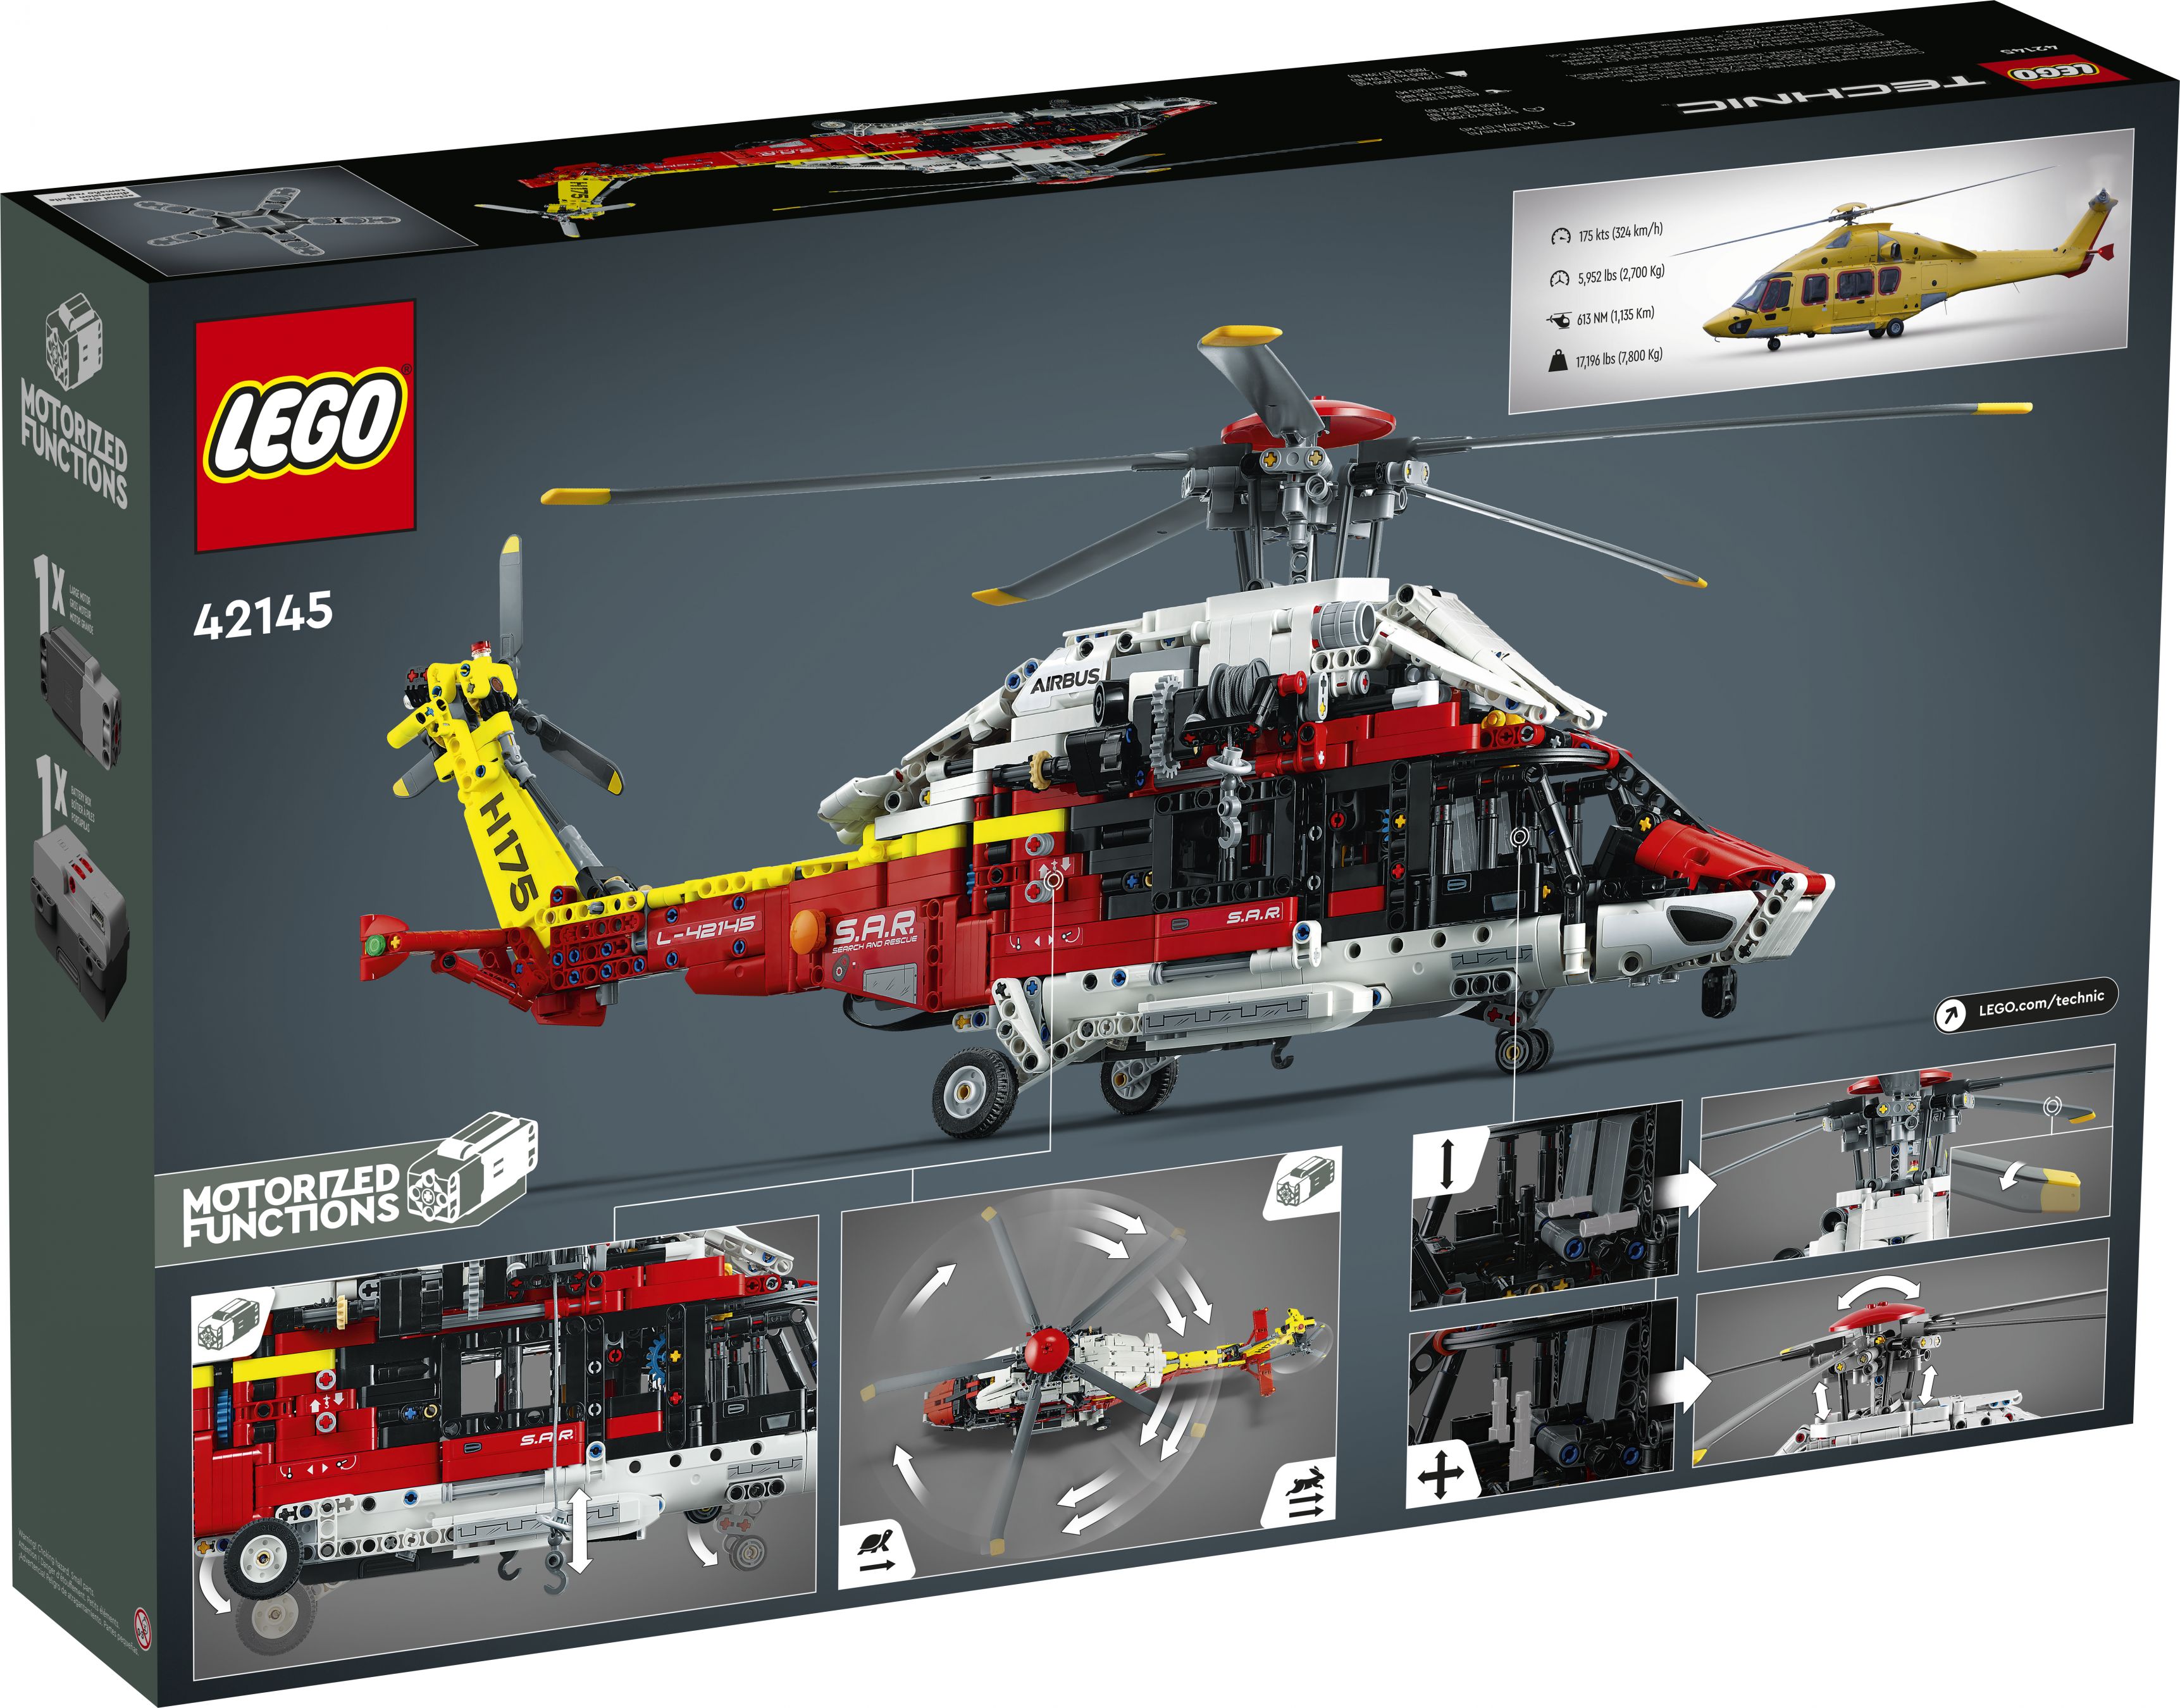 LEGO Technic 42145 Airbus H175 Rettungshubschrauber LEGO_42145_Box5_v39.jpg